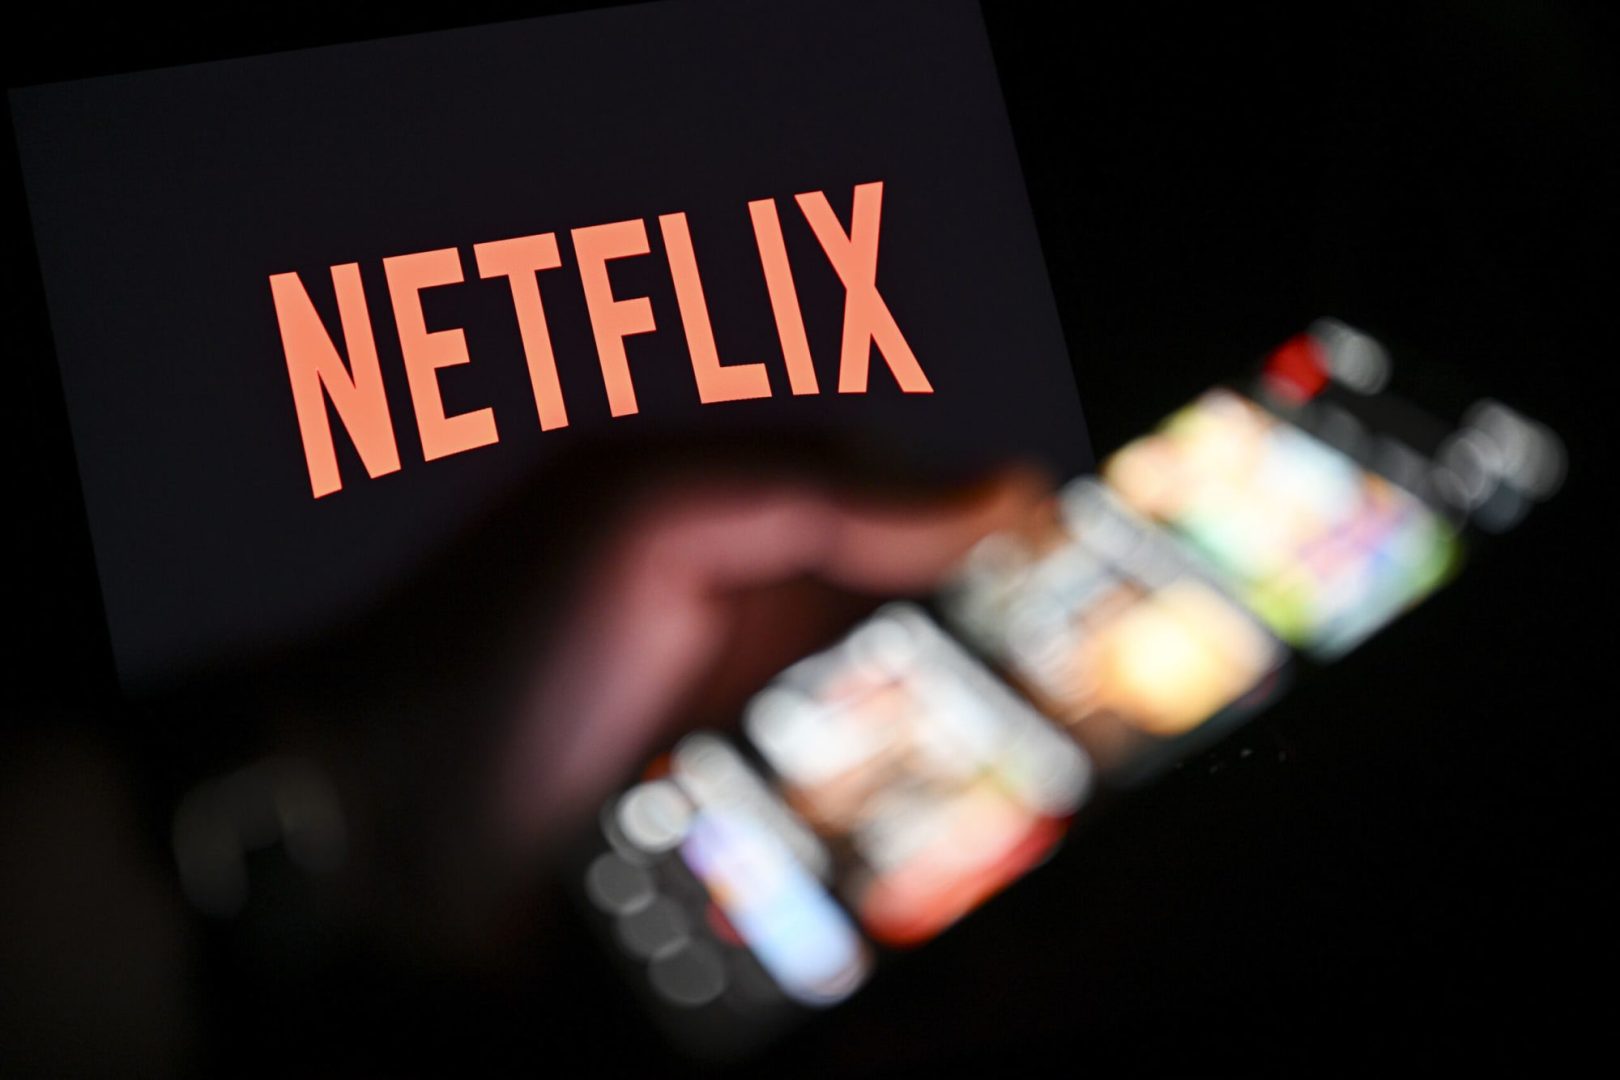 Netflix, merakla beklenen yeni filmle ilgili hayal kırıklığı yaratan bir güncelleme paylaşıyor